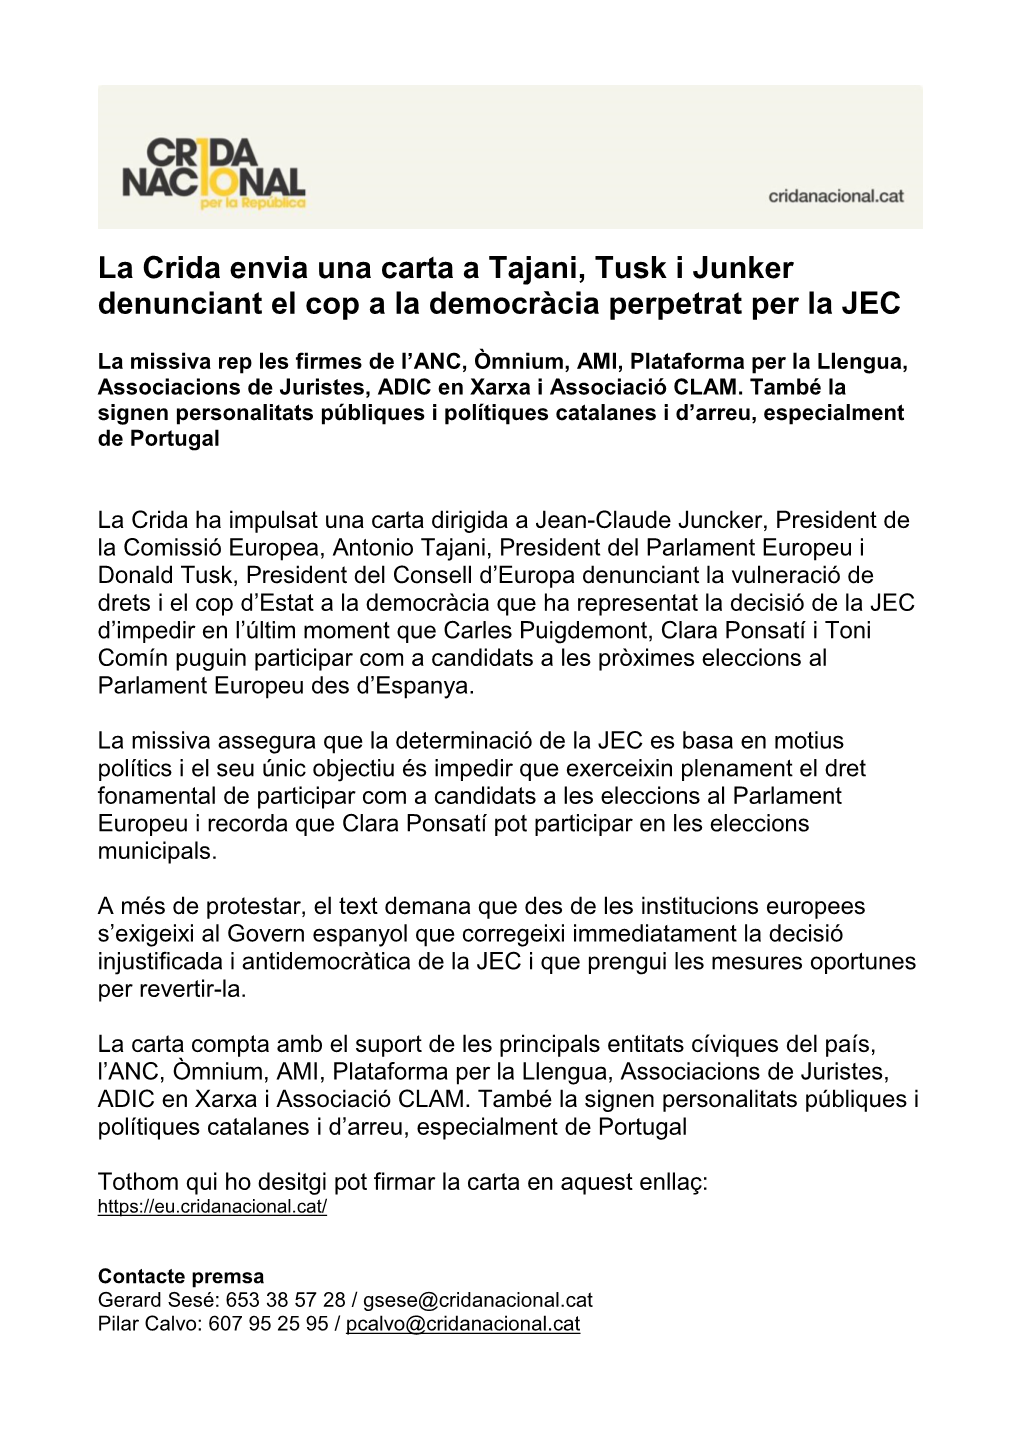 La Crida Envia Una Carta a Tajani, Tusk I Junker Denunciant El Cop a La Democràcia Perpetrat Per La JEC